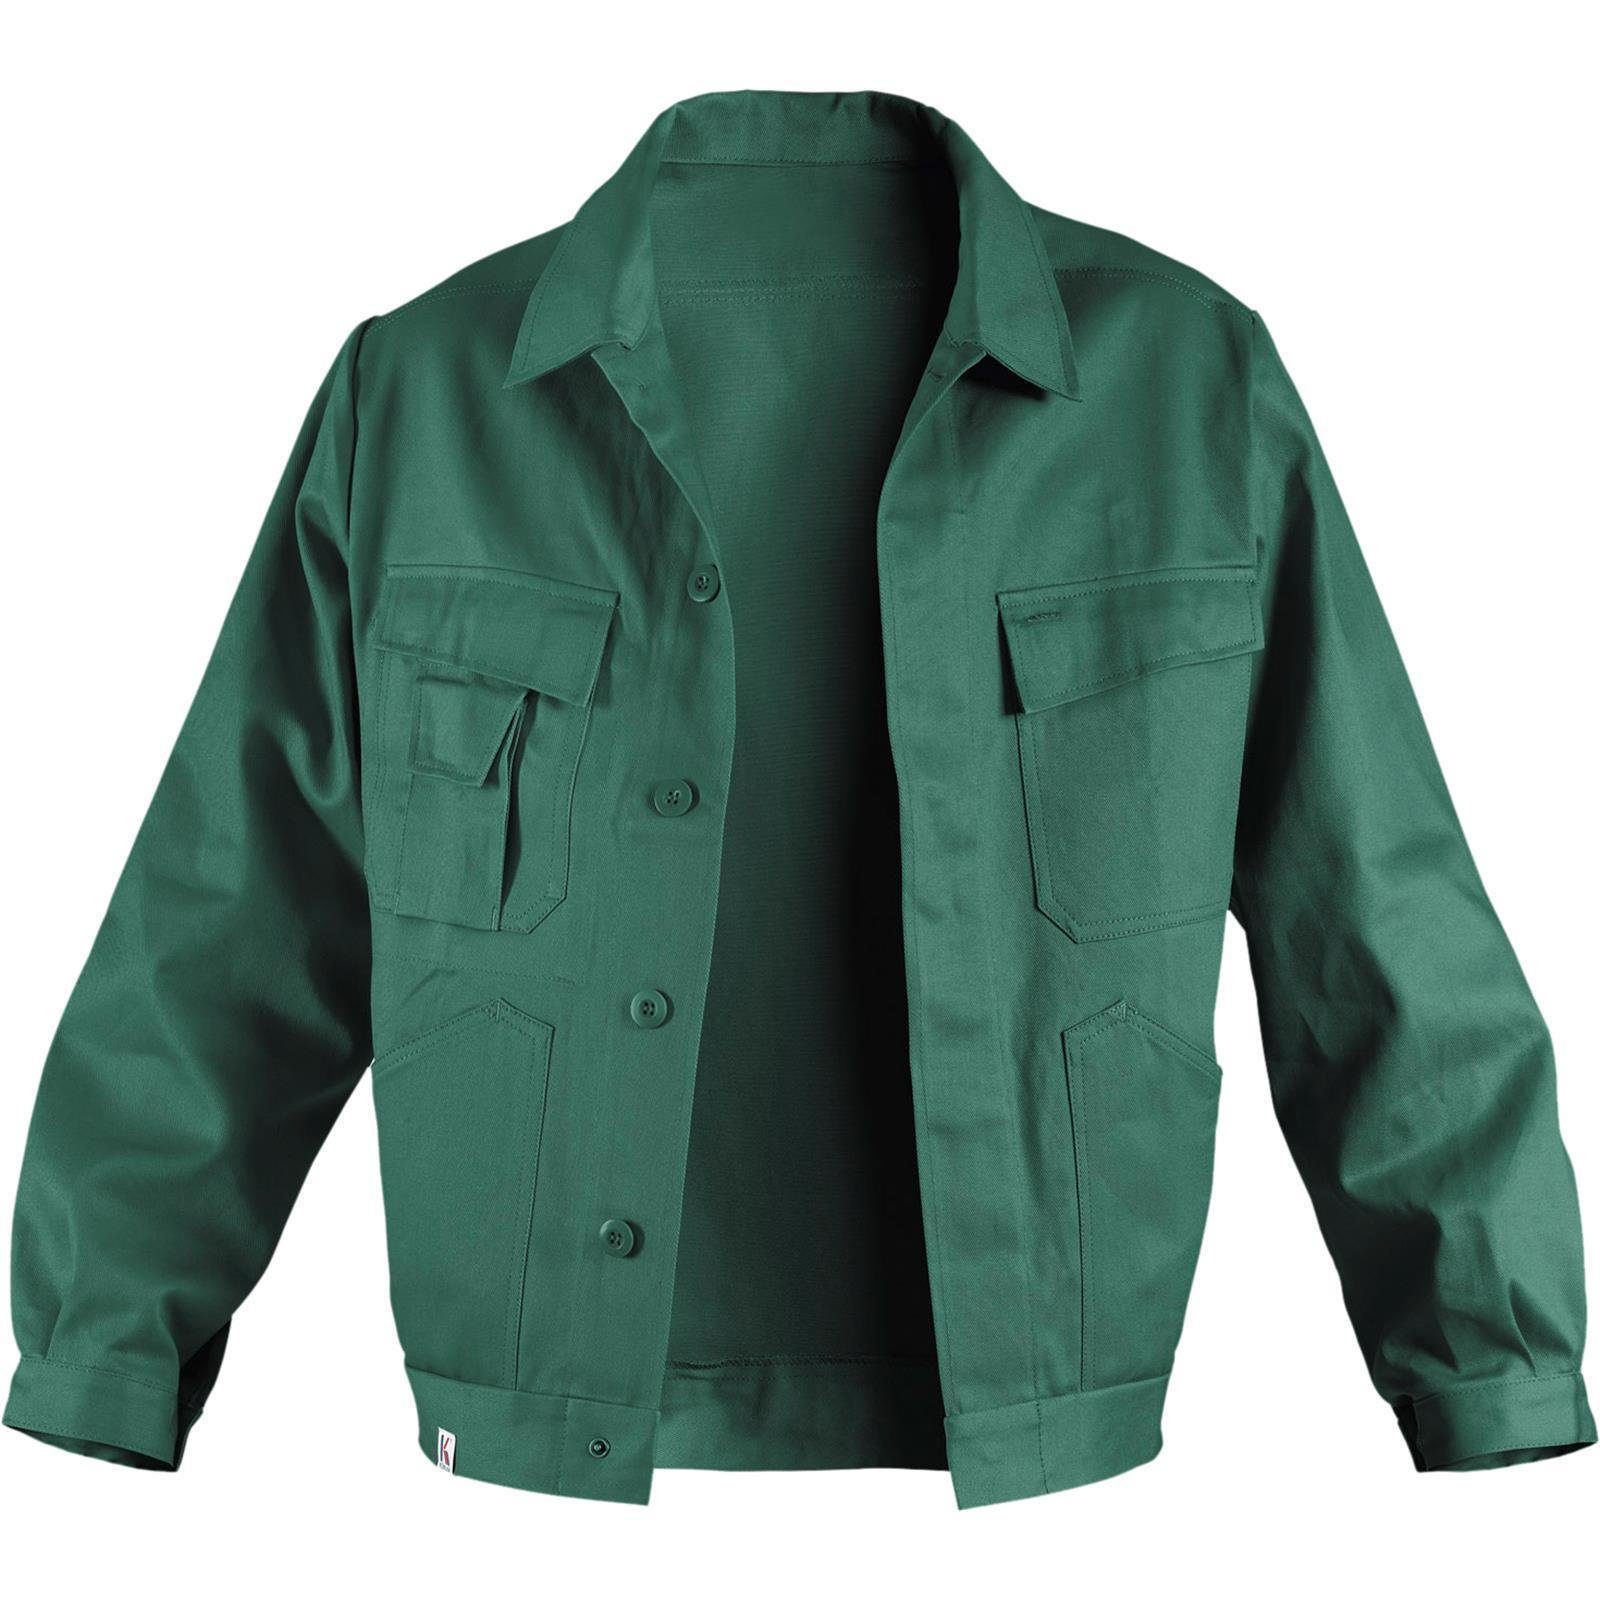 Jacke Arbeitsjacke Kübler grün 100%Baumwolle